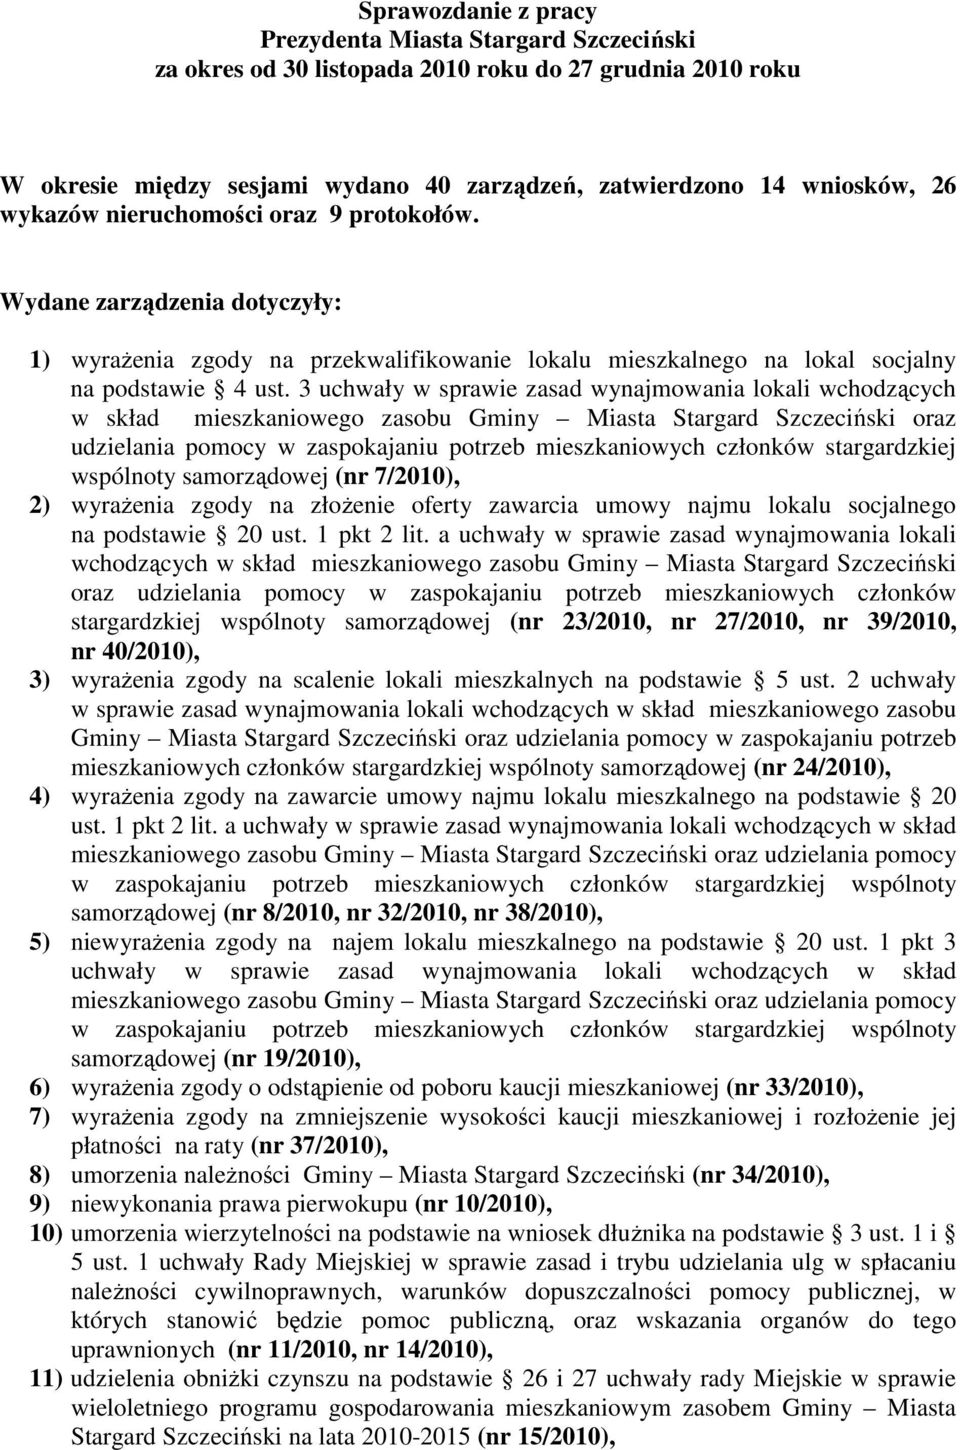 3 uchwały w sprawie zasad wynajmowania lokali wchodzących w skład mieszkaniowego zasobu Gminy Miasta Stargard Szczeciński oraz udzielania pomocy w zaspokajaniu potrzeb mieszkaniowych członków